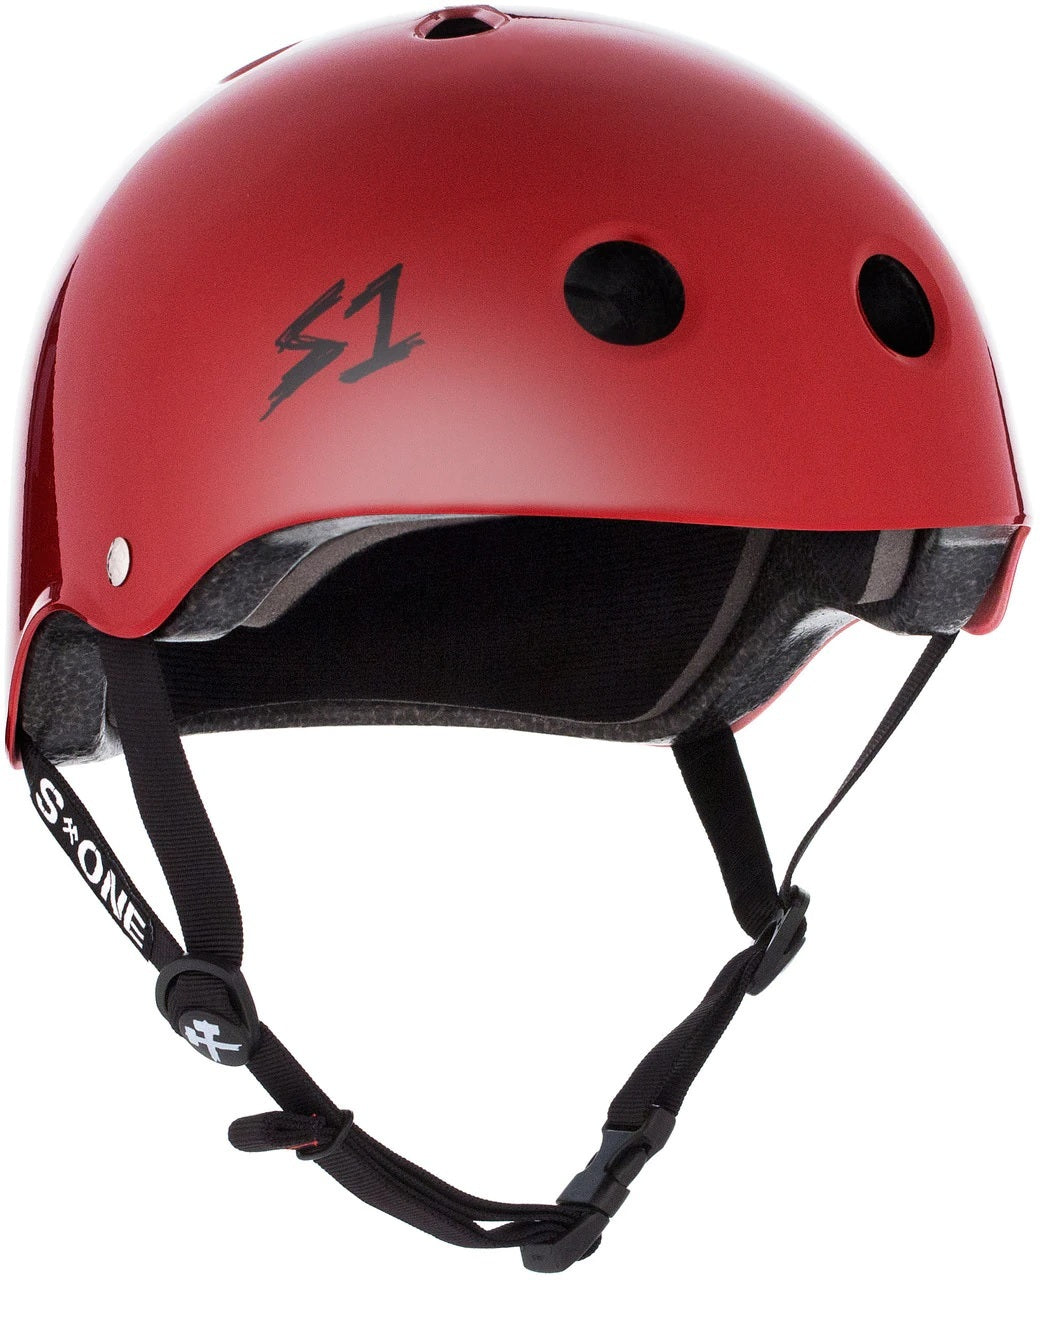 S1 Lifer Helmet in Scarlet Red